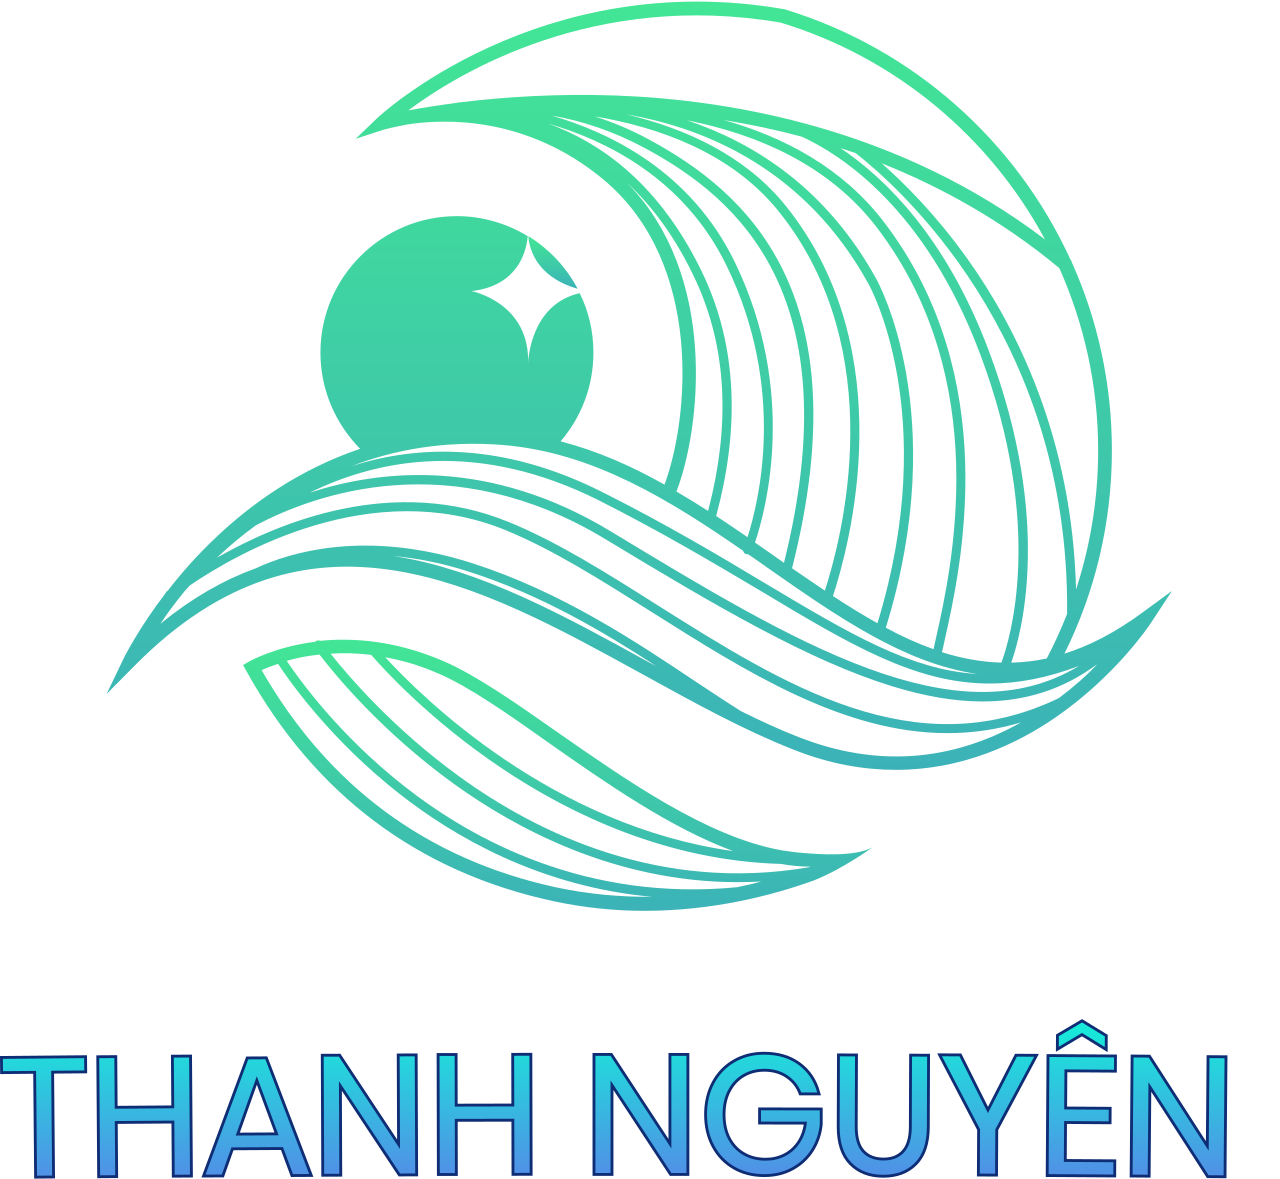 THANH NGUYÊN 's logo